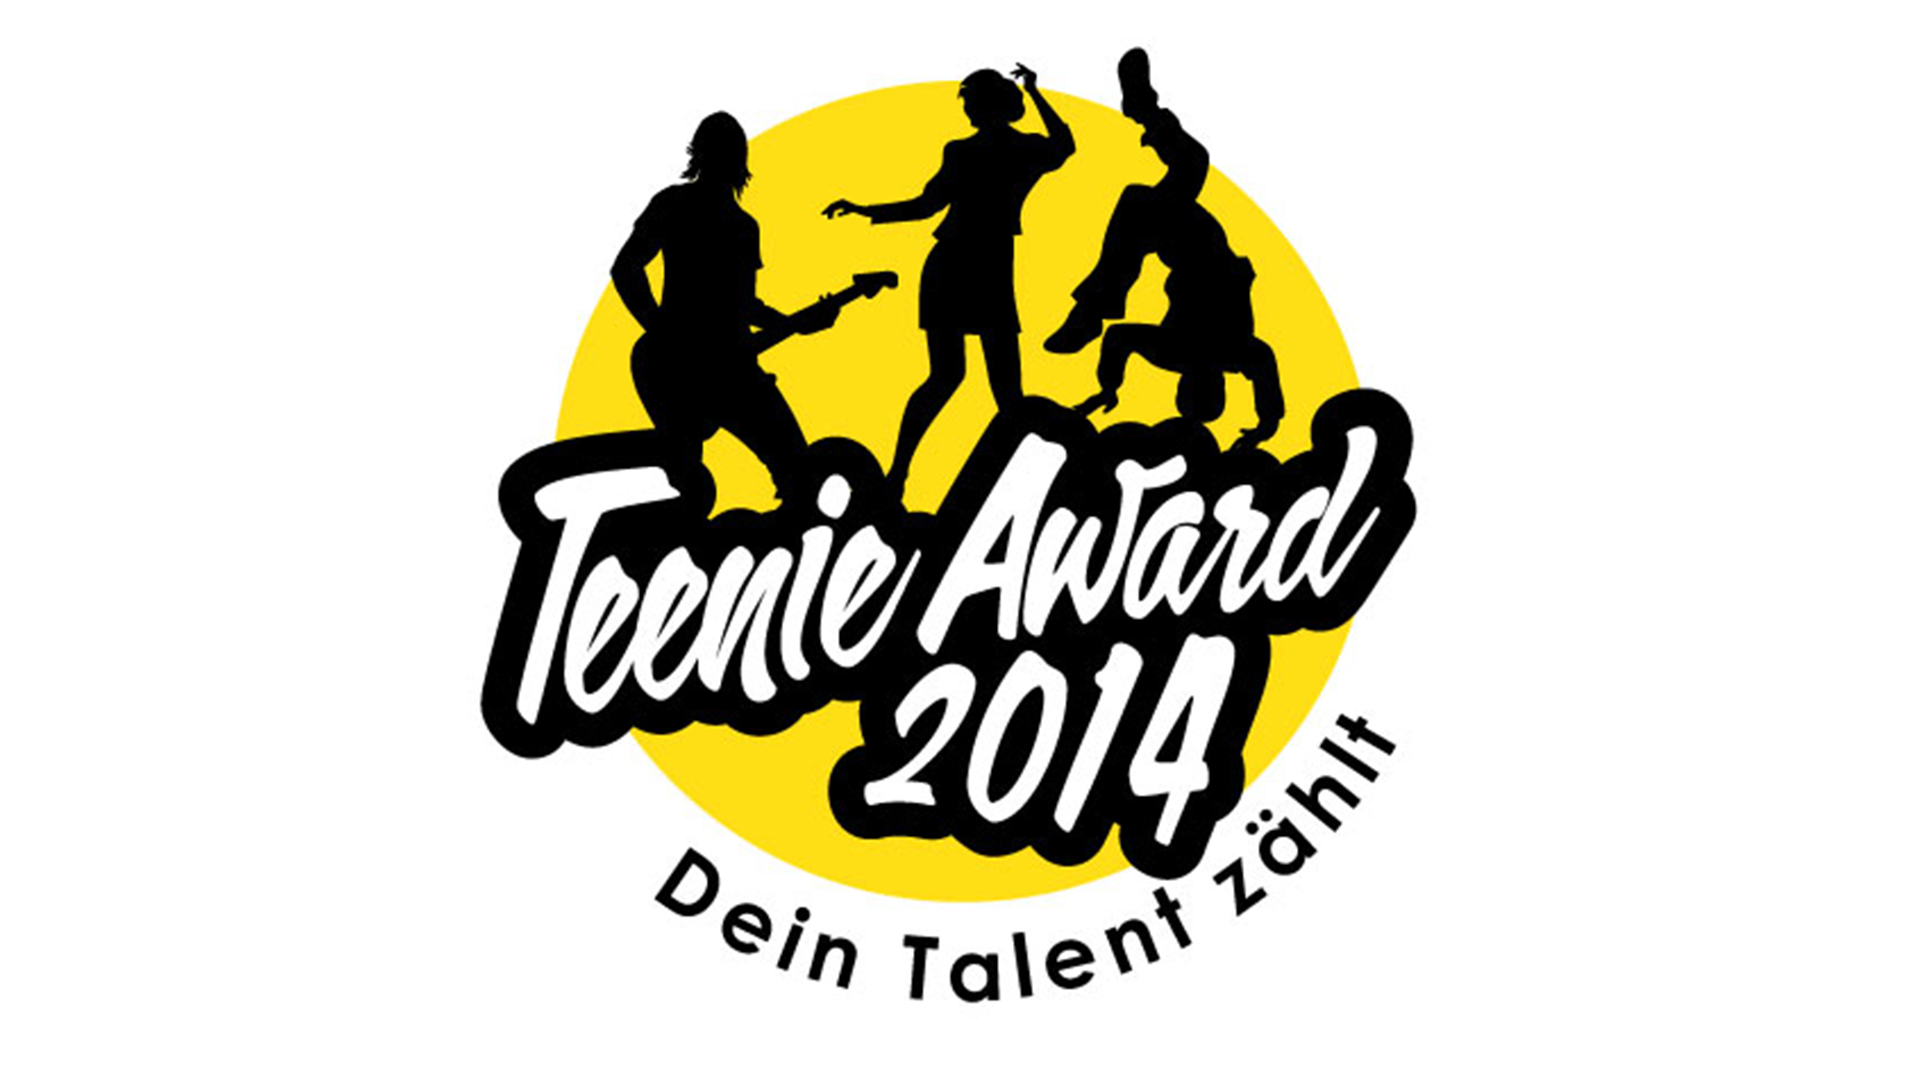 Teenie Award 2014